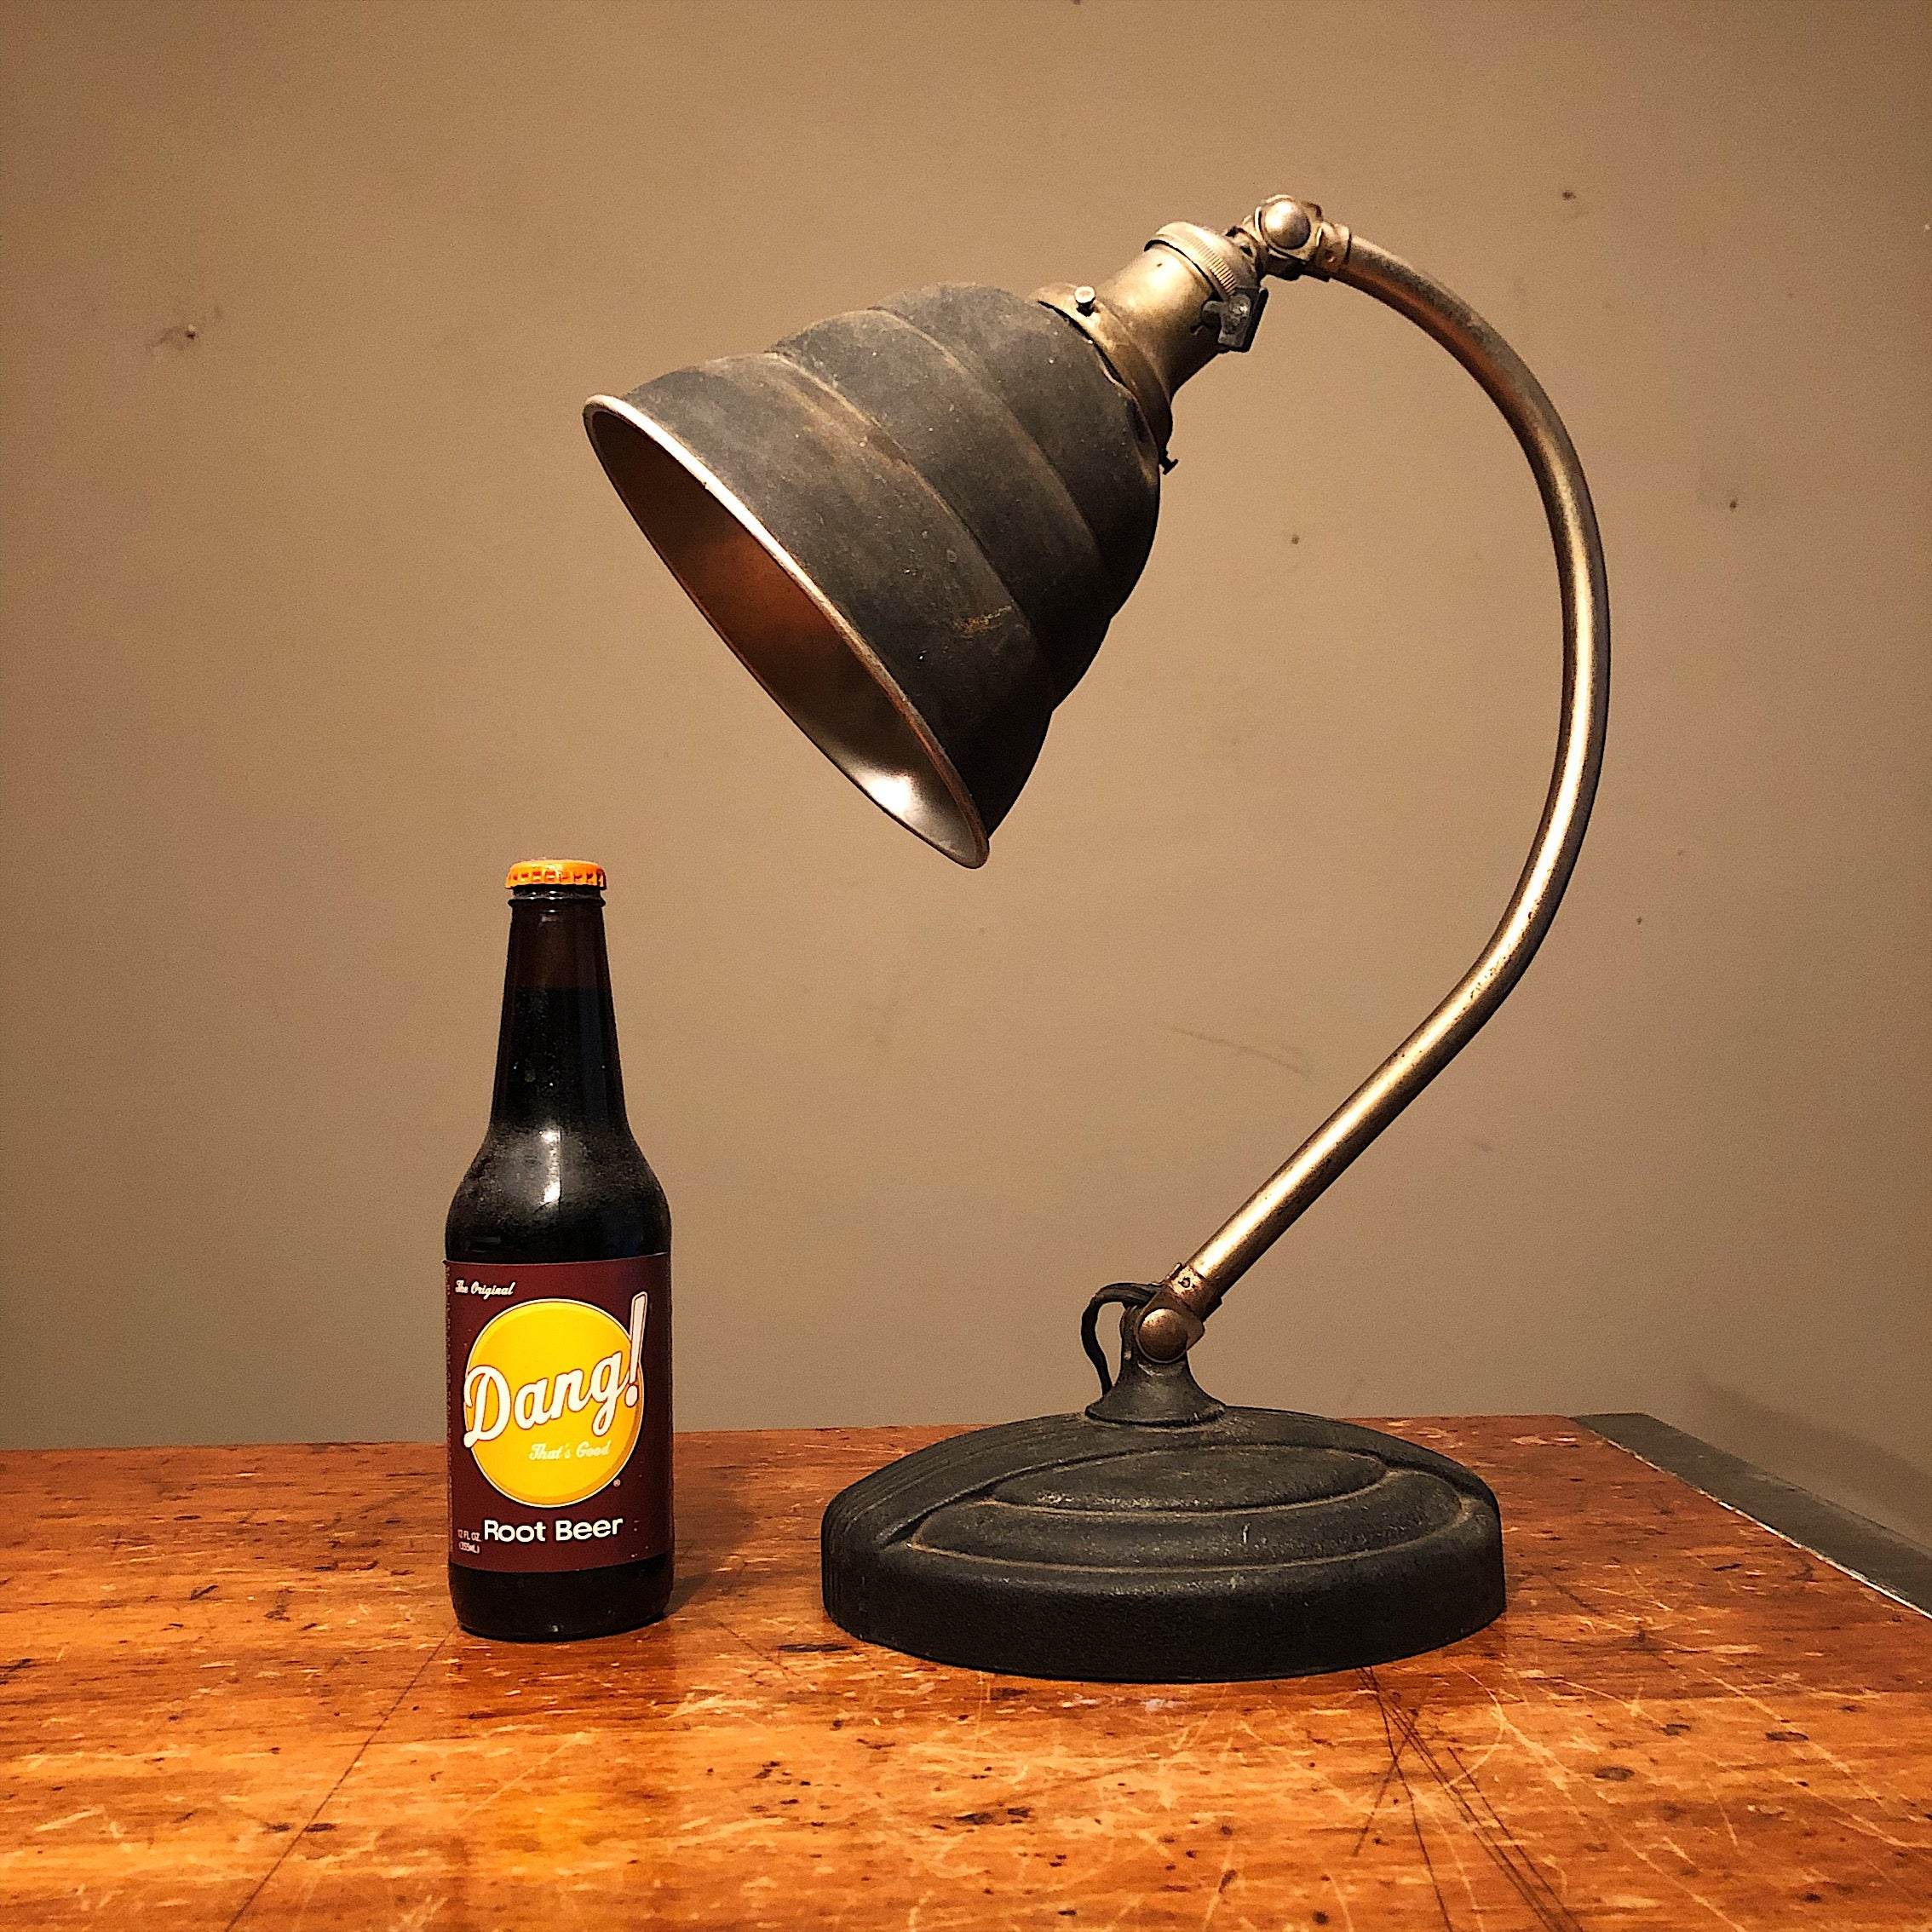 Vintage Articulating Desk Lamp | General Electric